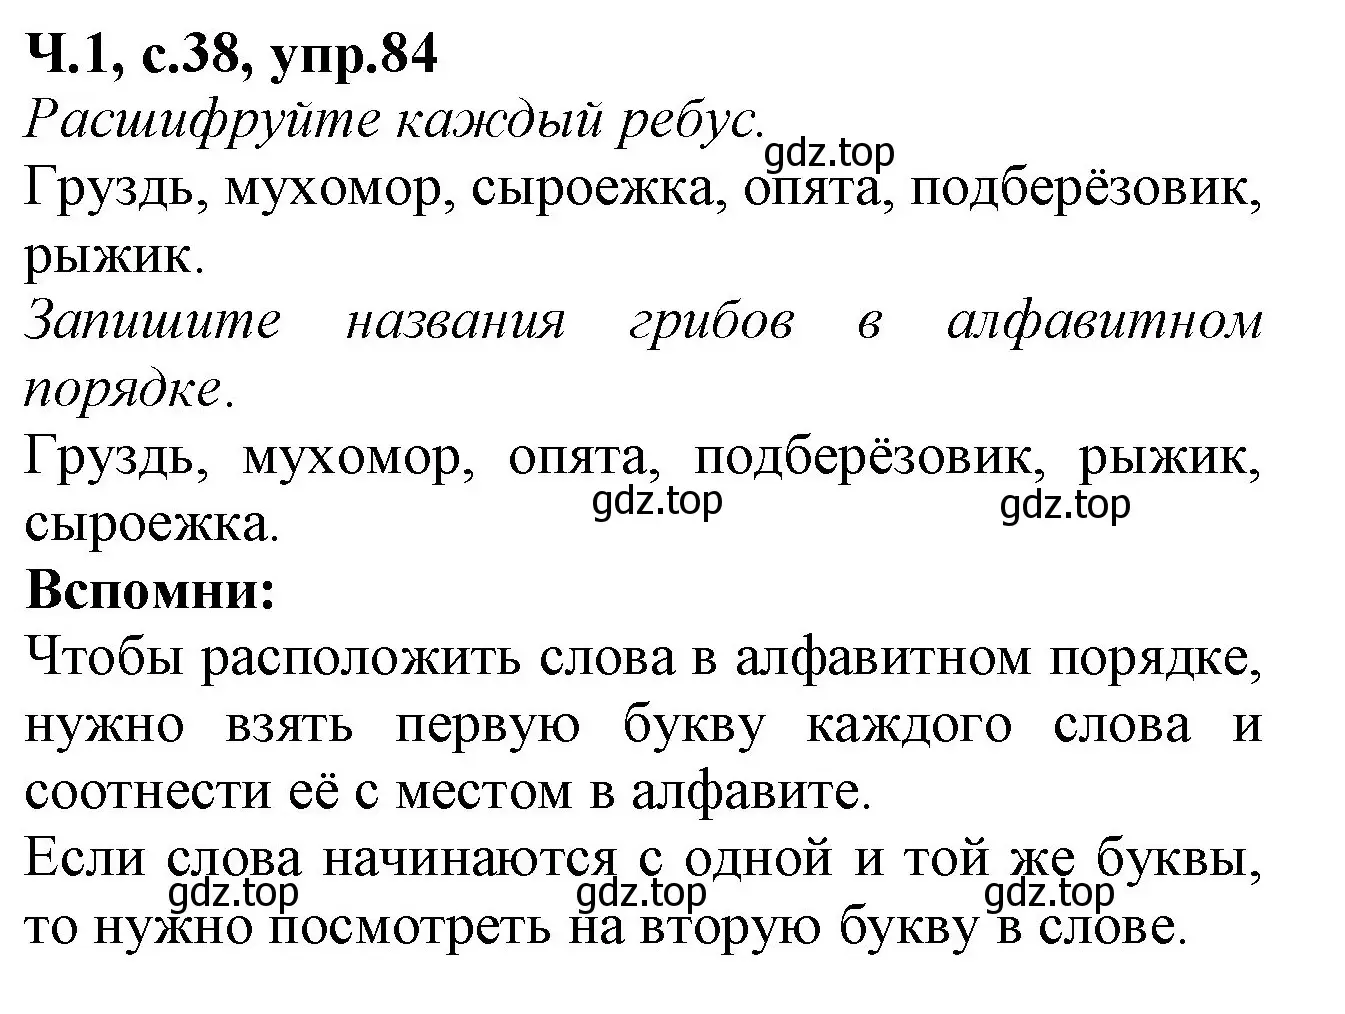 Решение номер 84 (страница 38) гдз по русскому языку 2 класс Канакина, рабочая тетрадь 1 часть